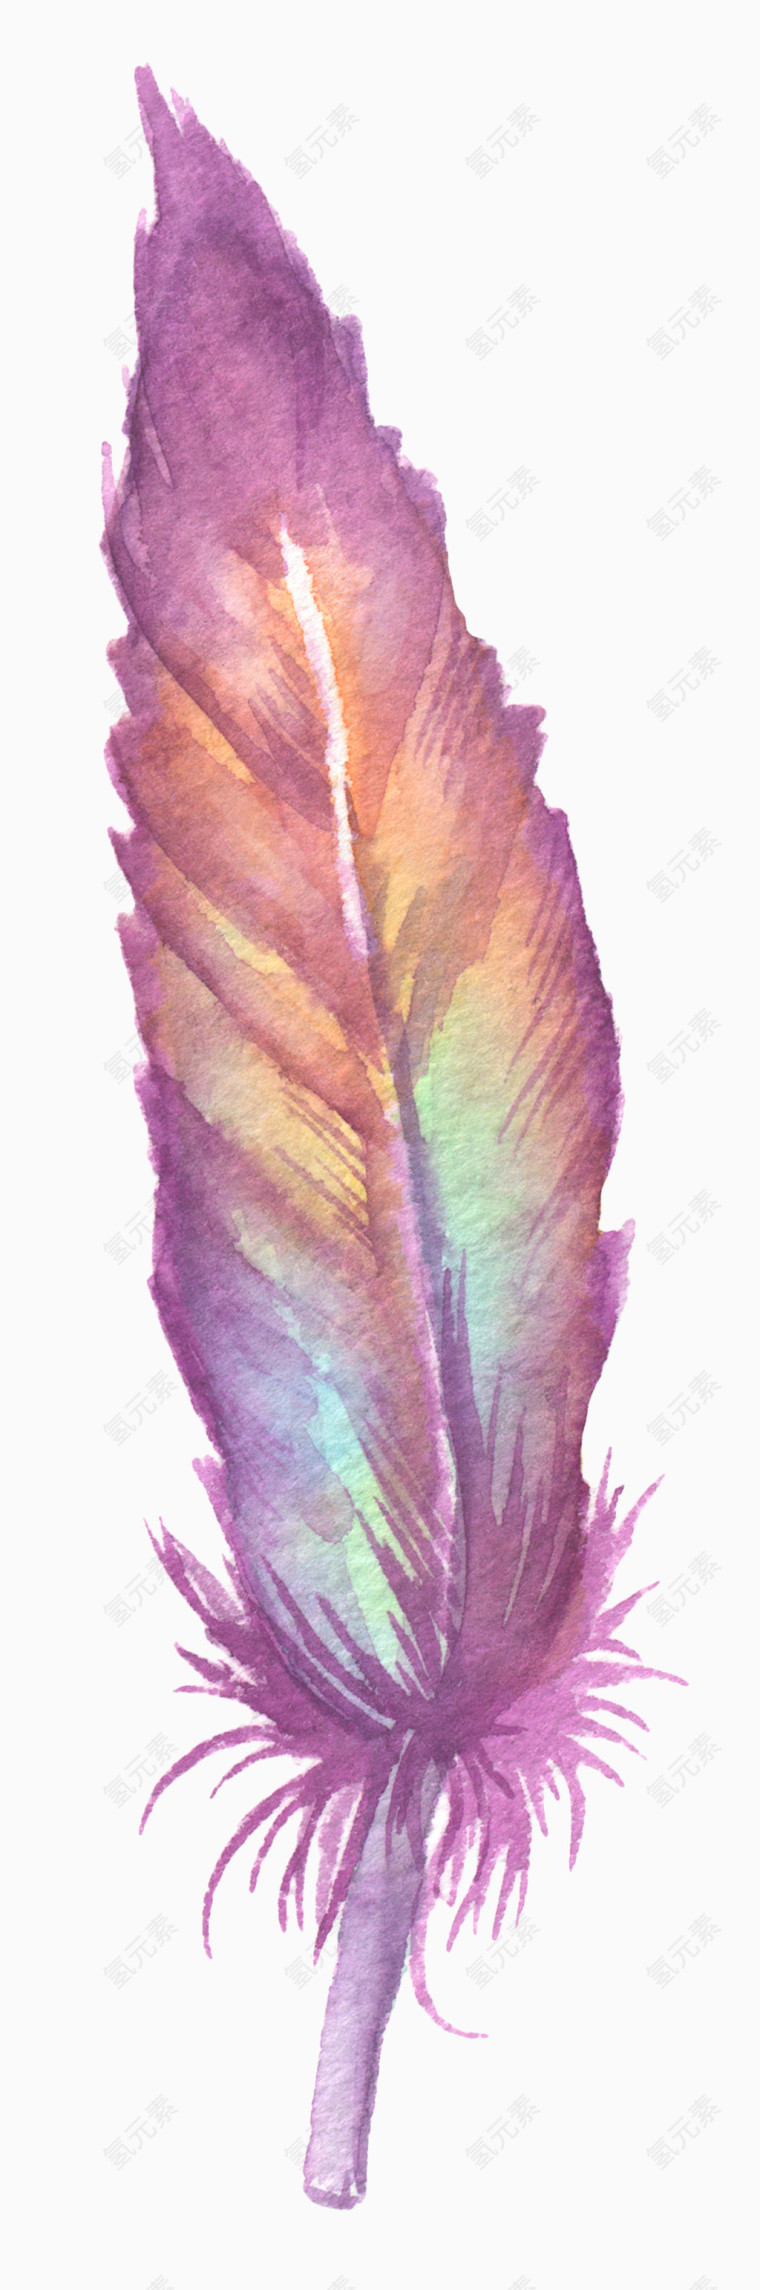 紫色发亮羽毛